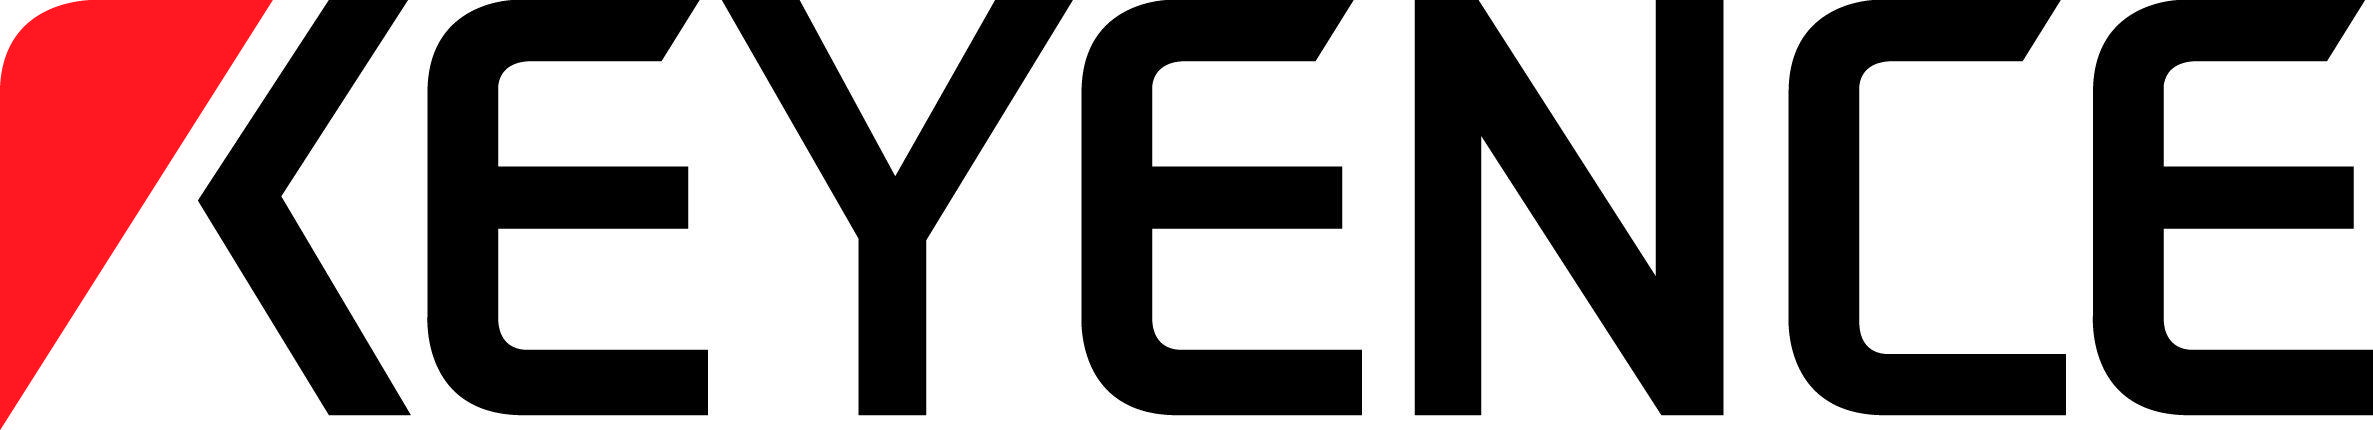 KEYENCE Logo - Keyence Logo | LOGOSURFER.COM